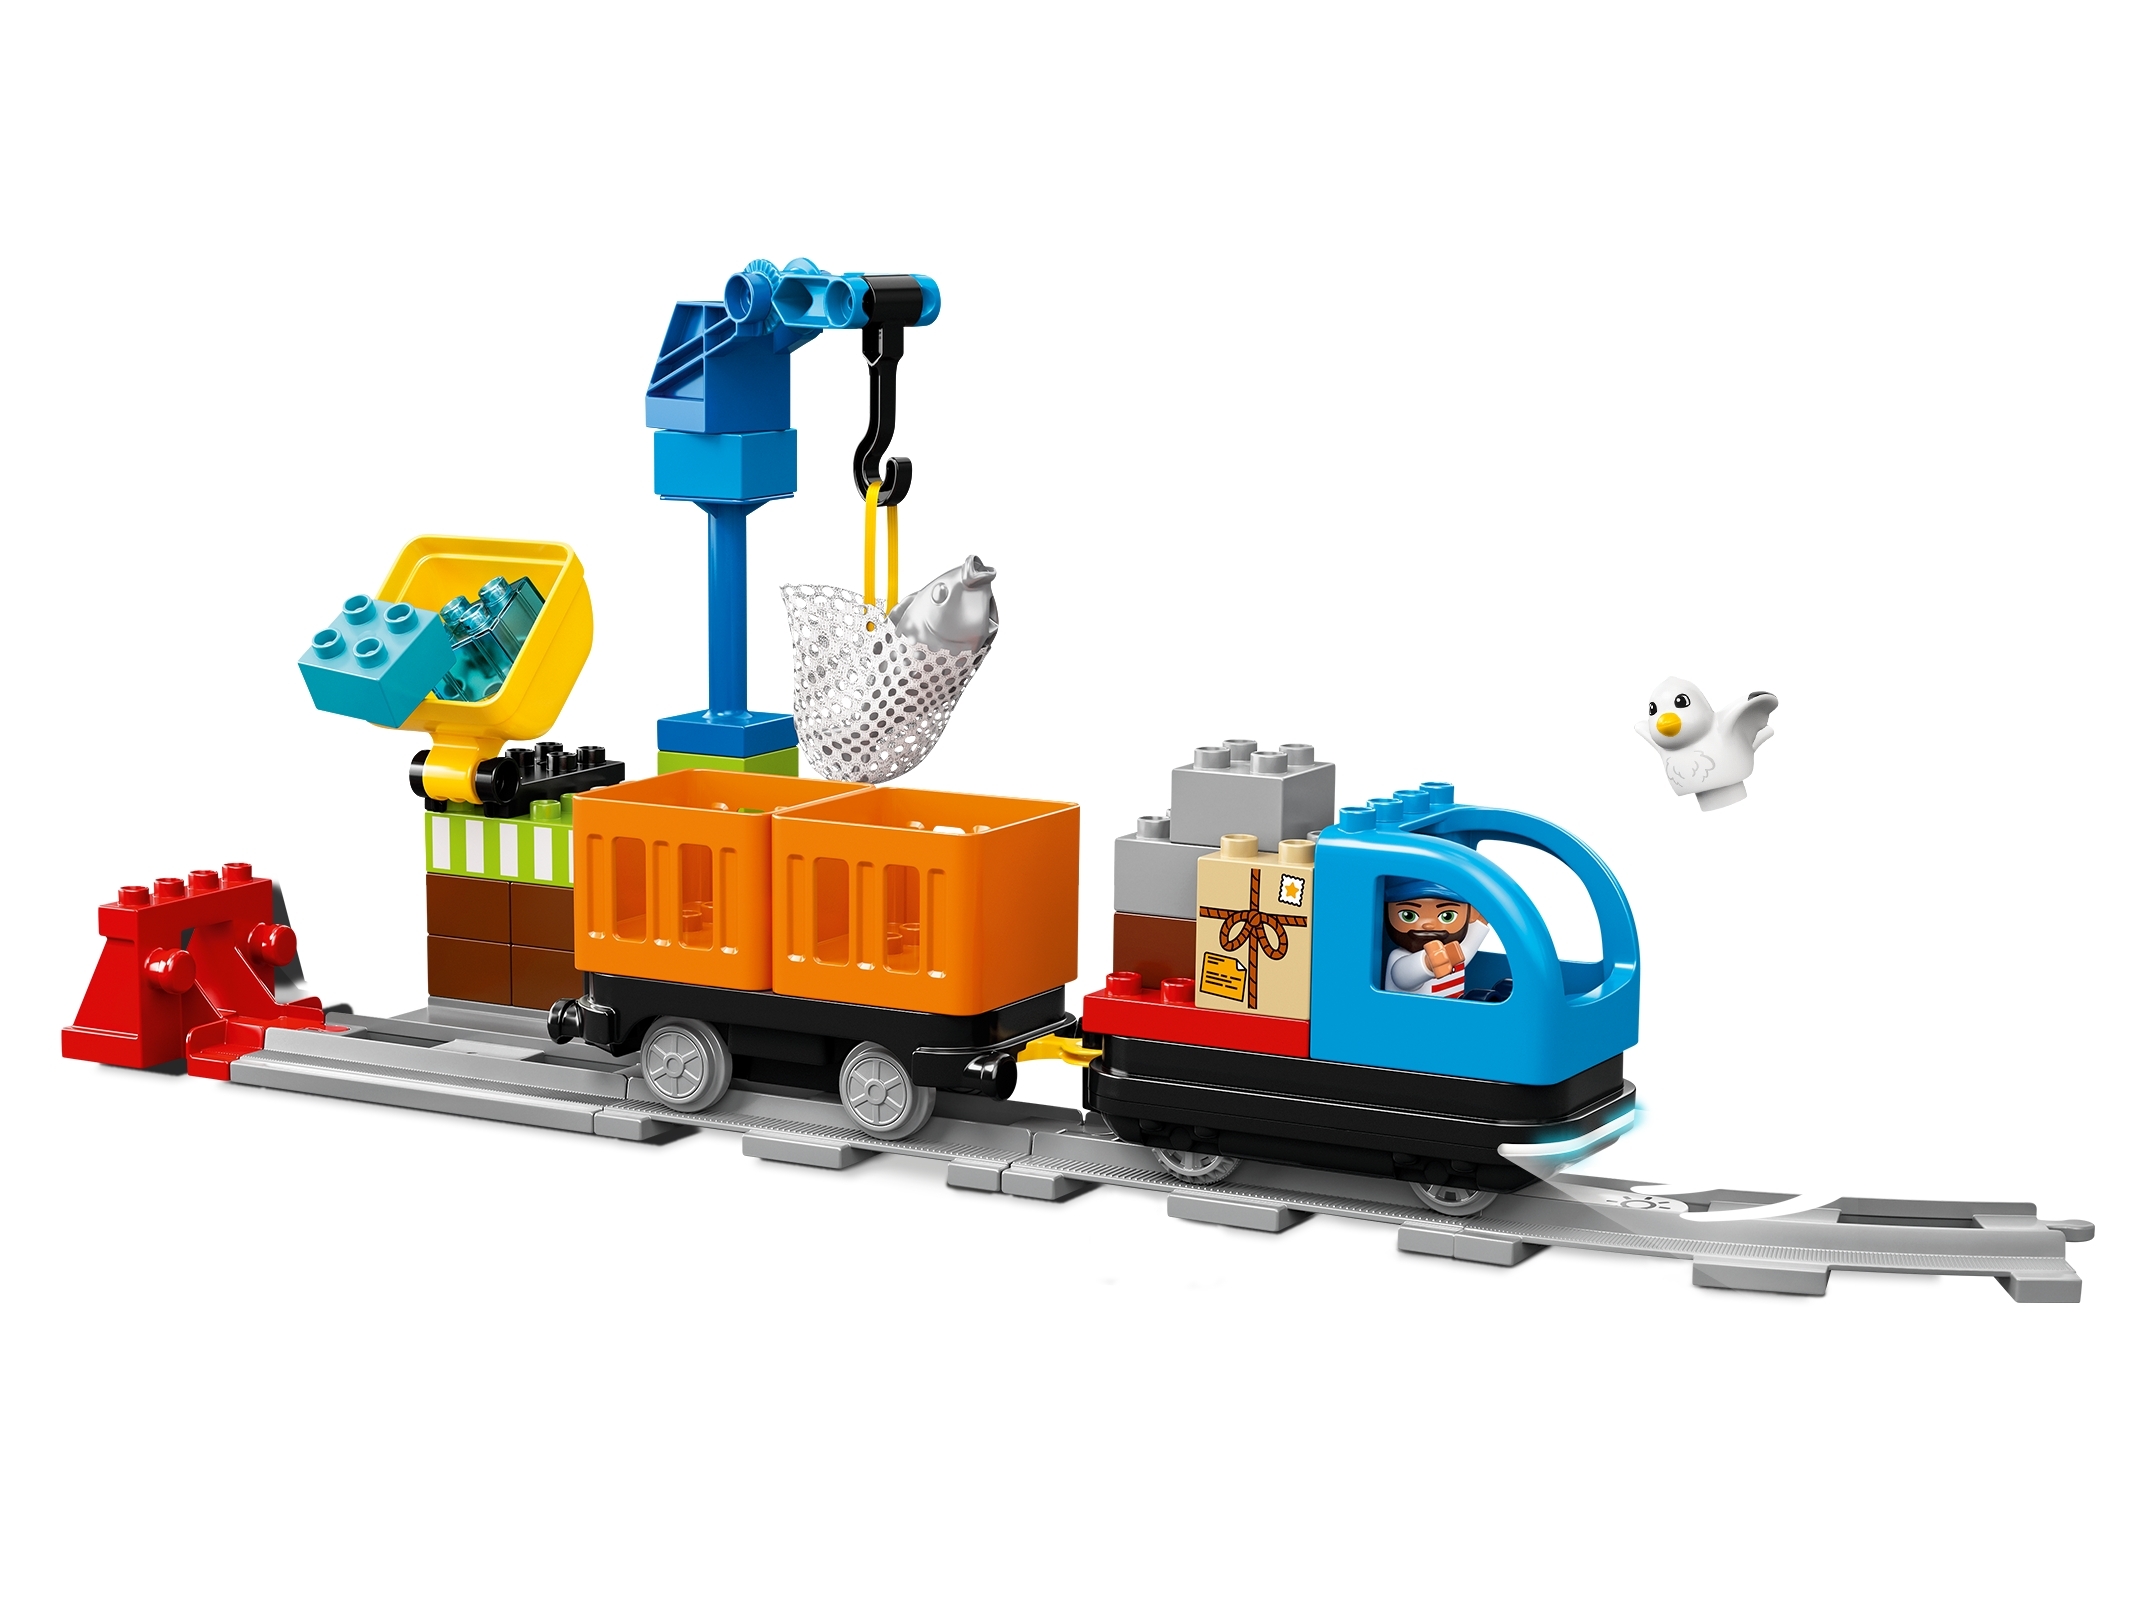 Blænding På jorden Uplifted Cargo Train 10875 | DUPLO® | Buy online at the Official LEGO® Shop US